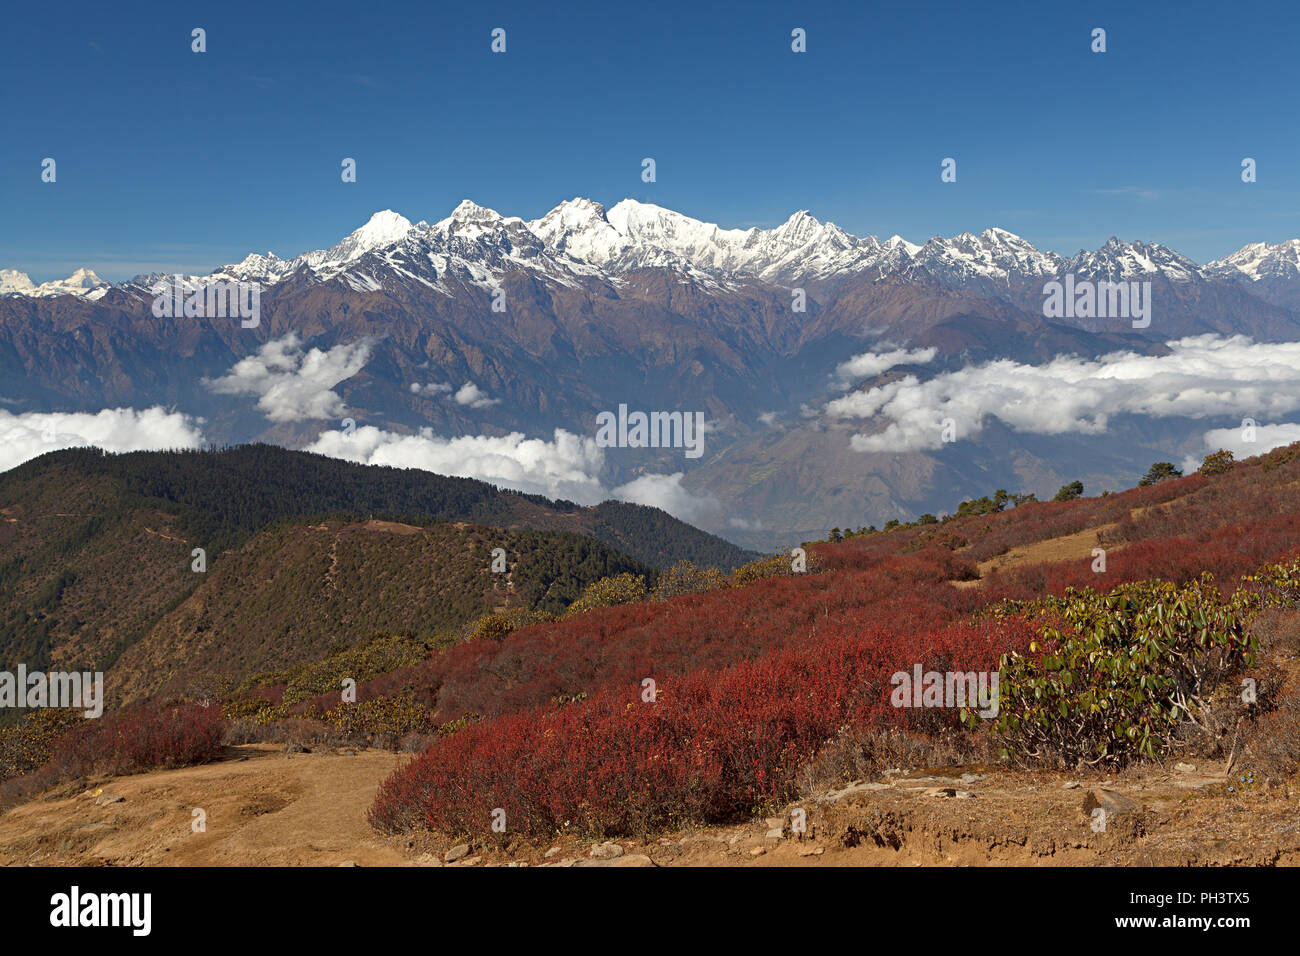 Grand montañas nevadas en el fondo con vegetación roja en primer plano. Macizo montañoso del Himalaya. Ganesh Himal y Manaslu Himal cordillera Foto de stock